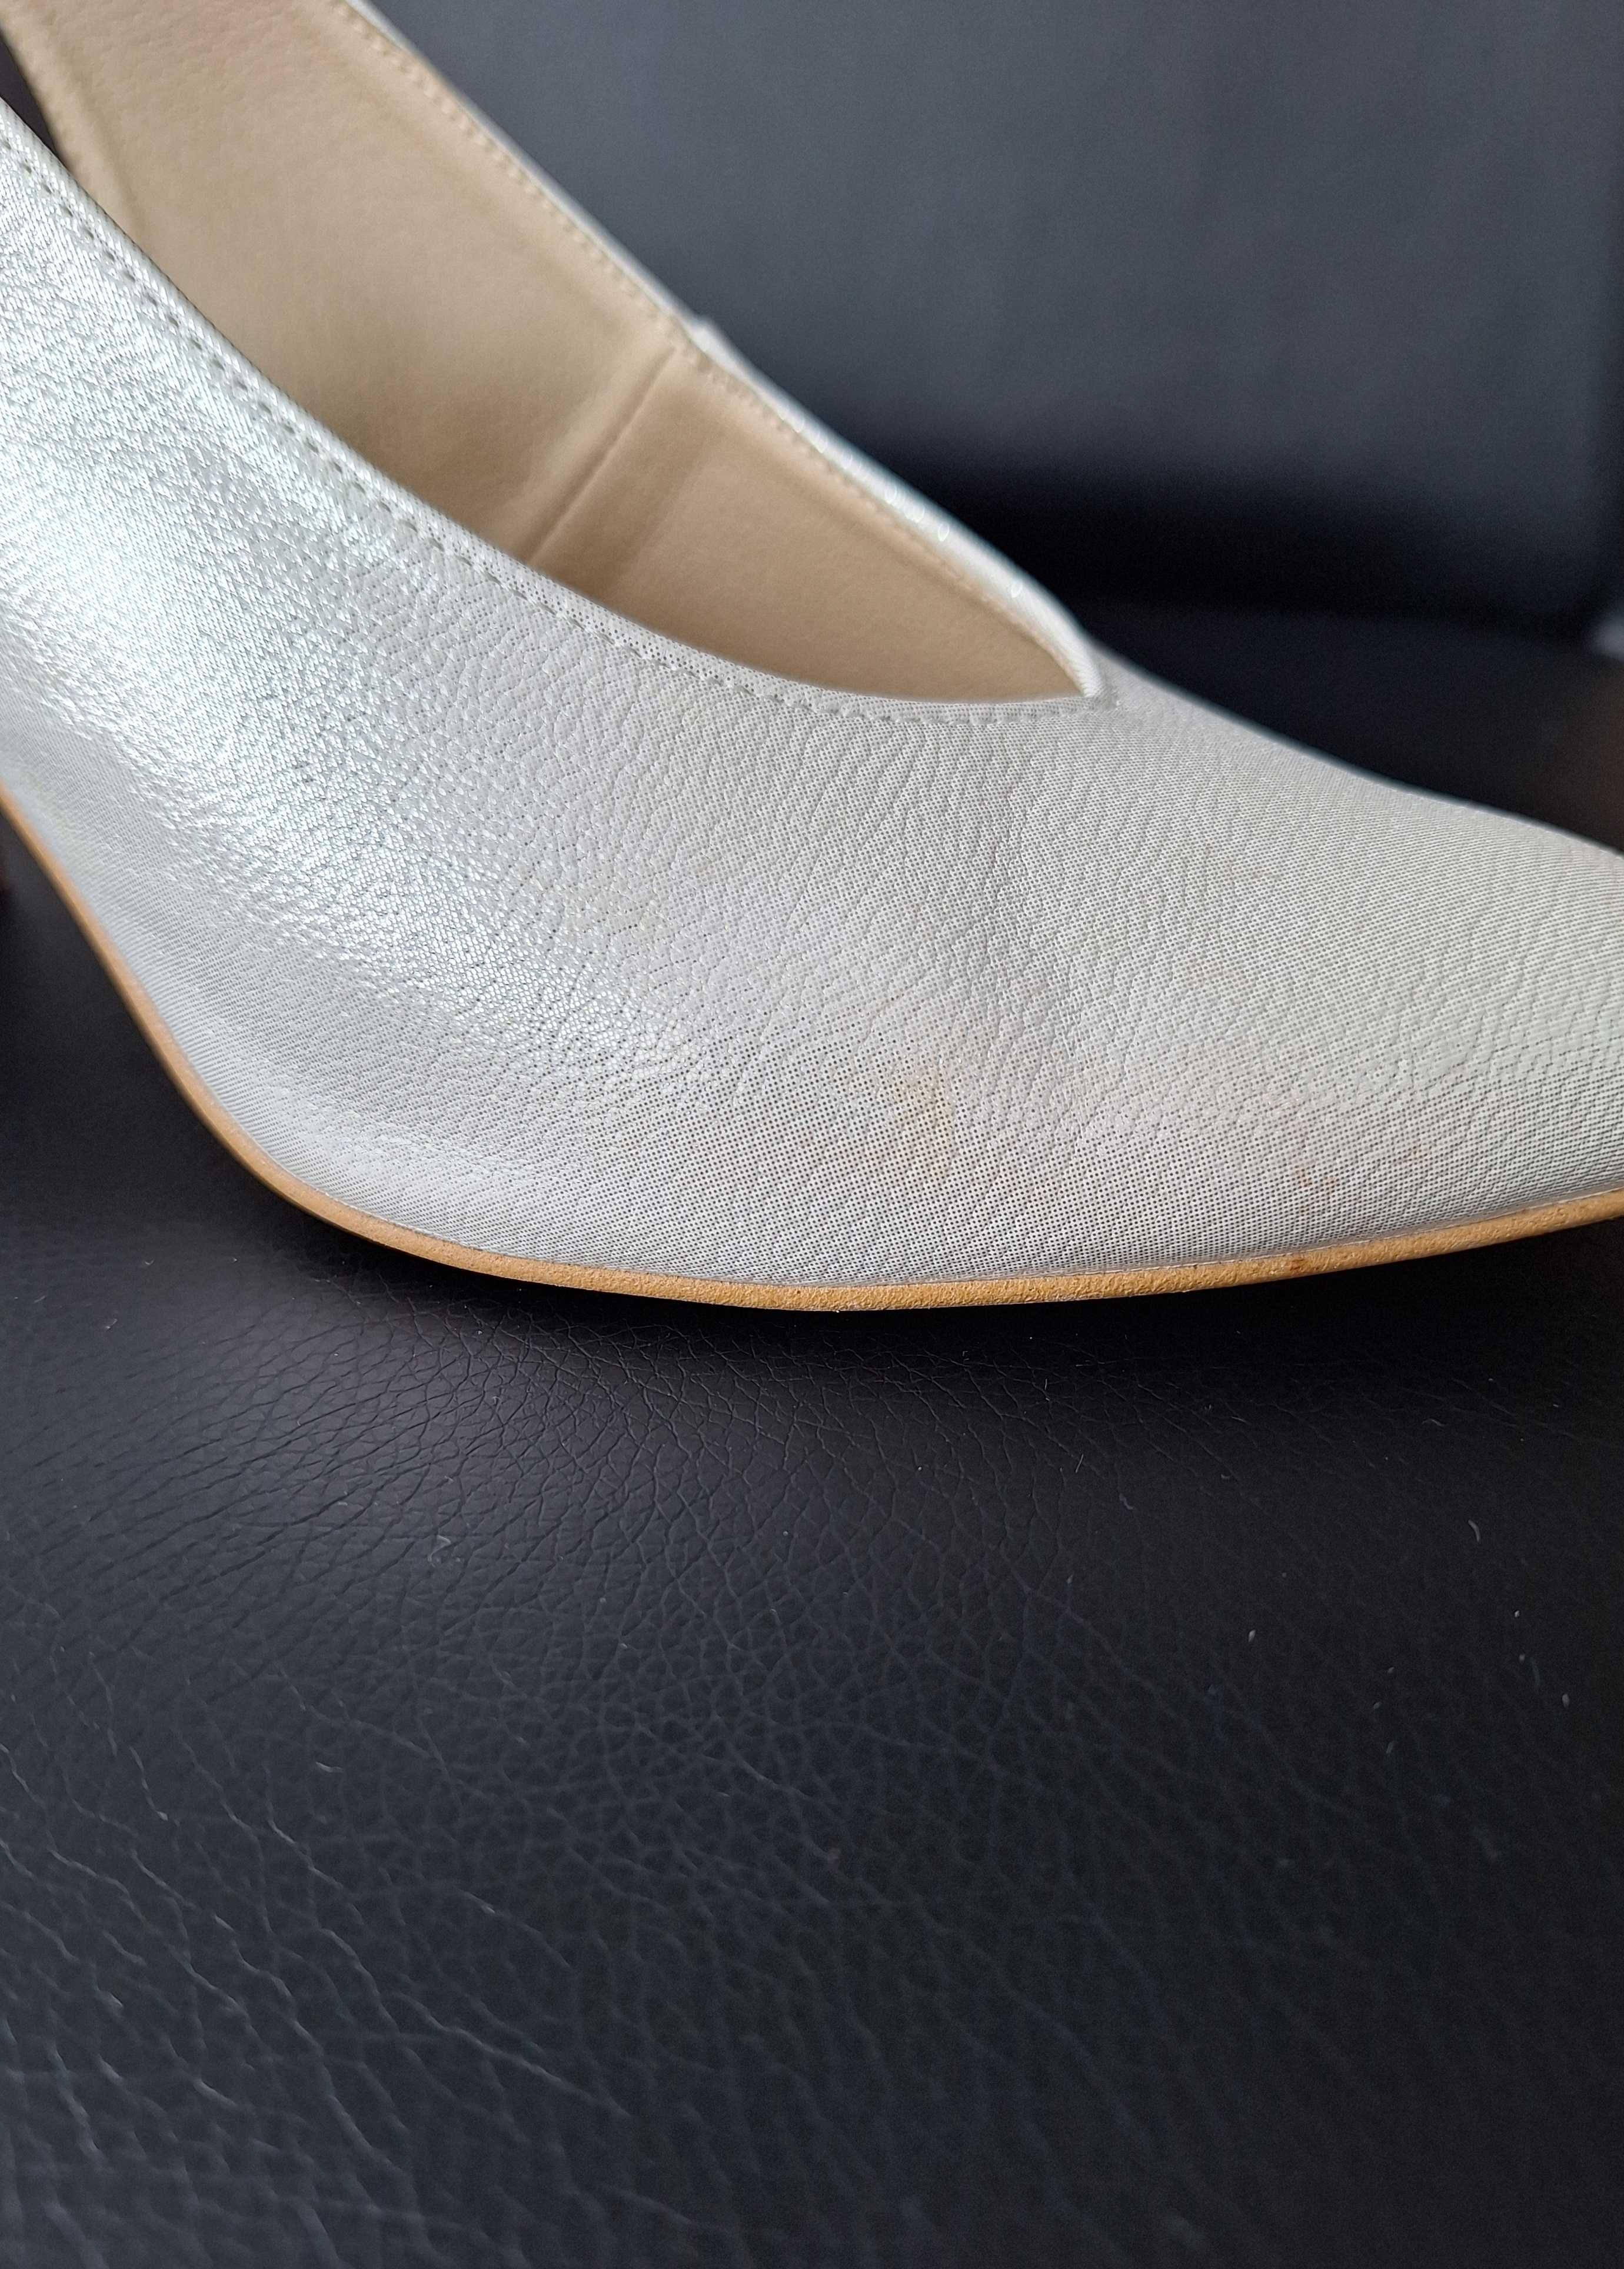 Buty ślubne weselne białe błyszczące czółenka na słupku rozmiar 38